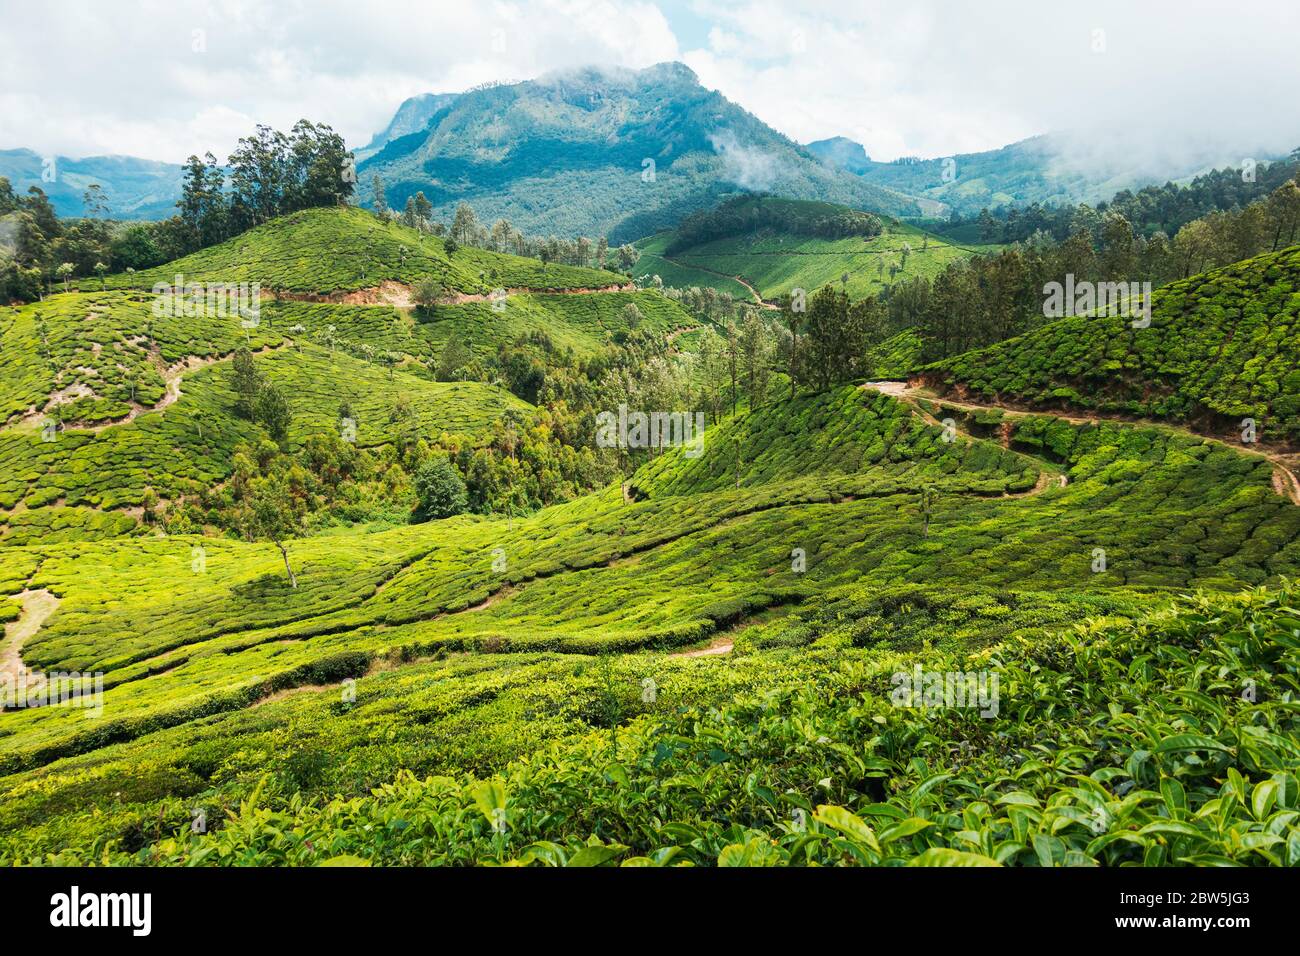 Des chemins et des routes de terre sillent les plantations de thé à flanc de colline à Munnar, en Inde Banque D'Images